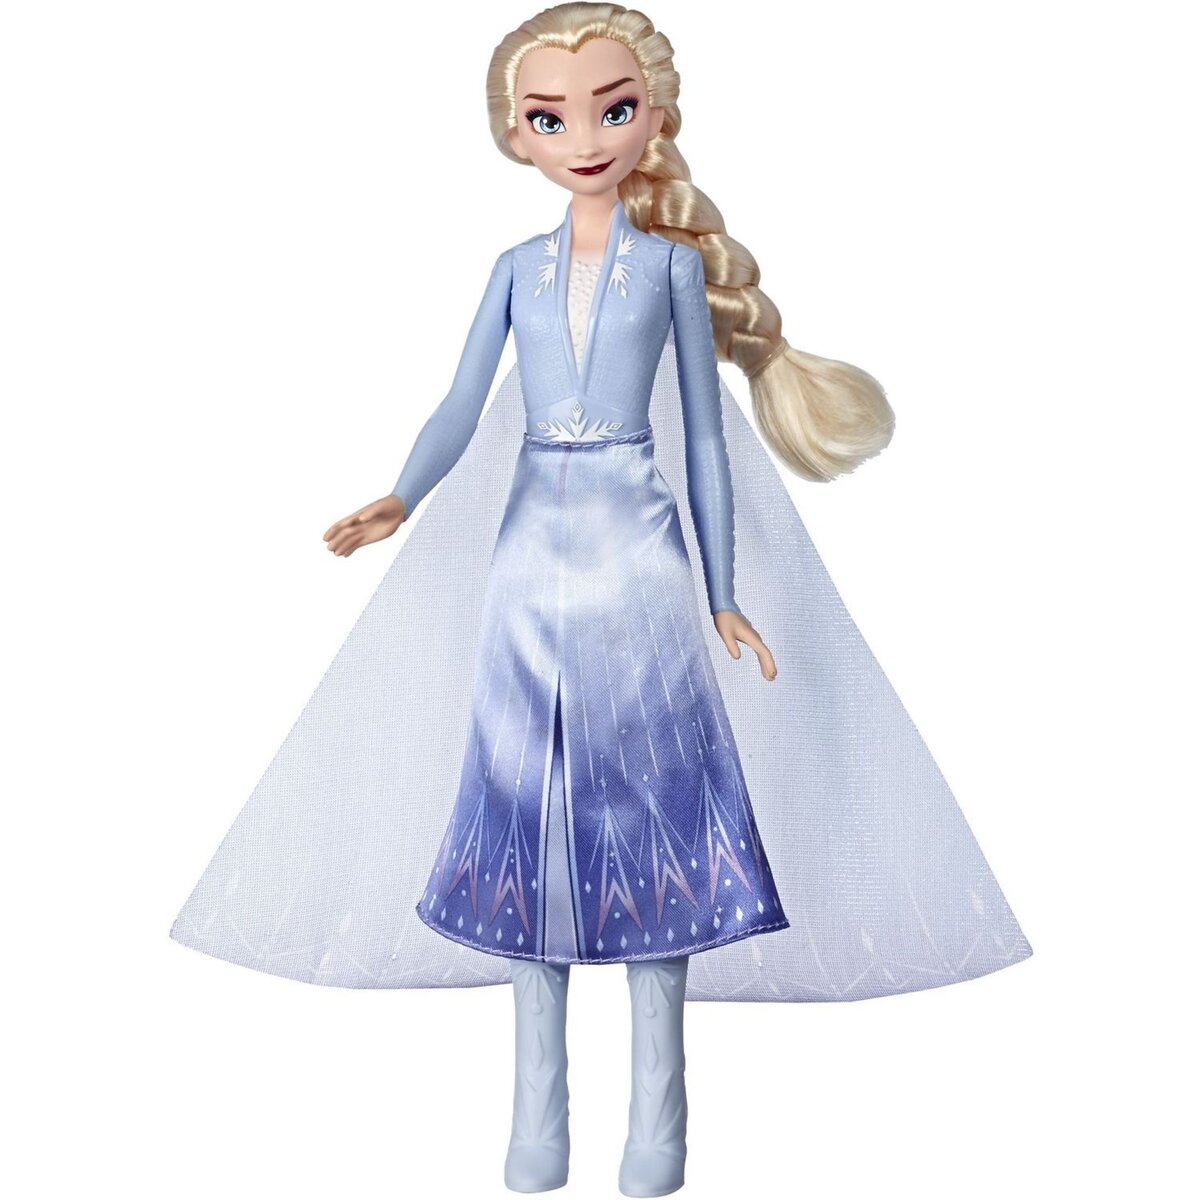 HASBRO Poupée Elsa avec robe lumineuse - La reine des neiges 2 pas